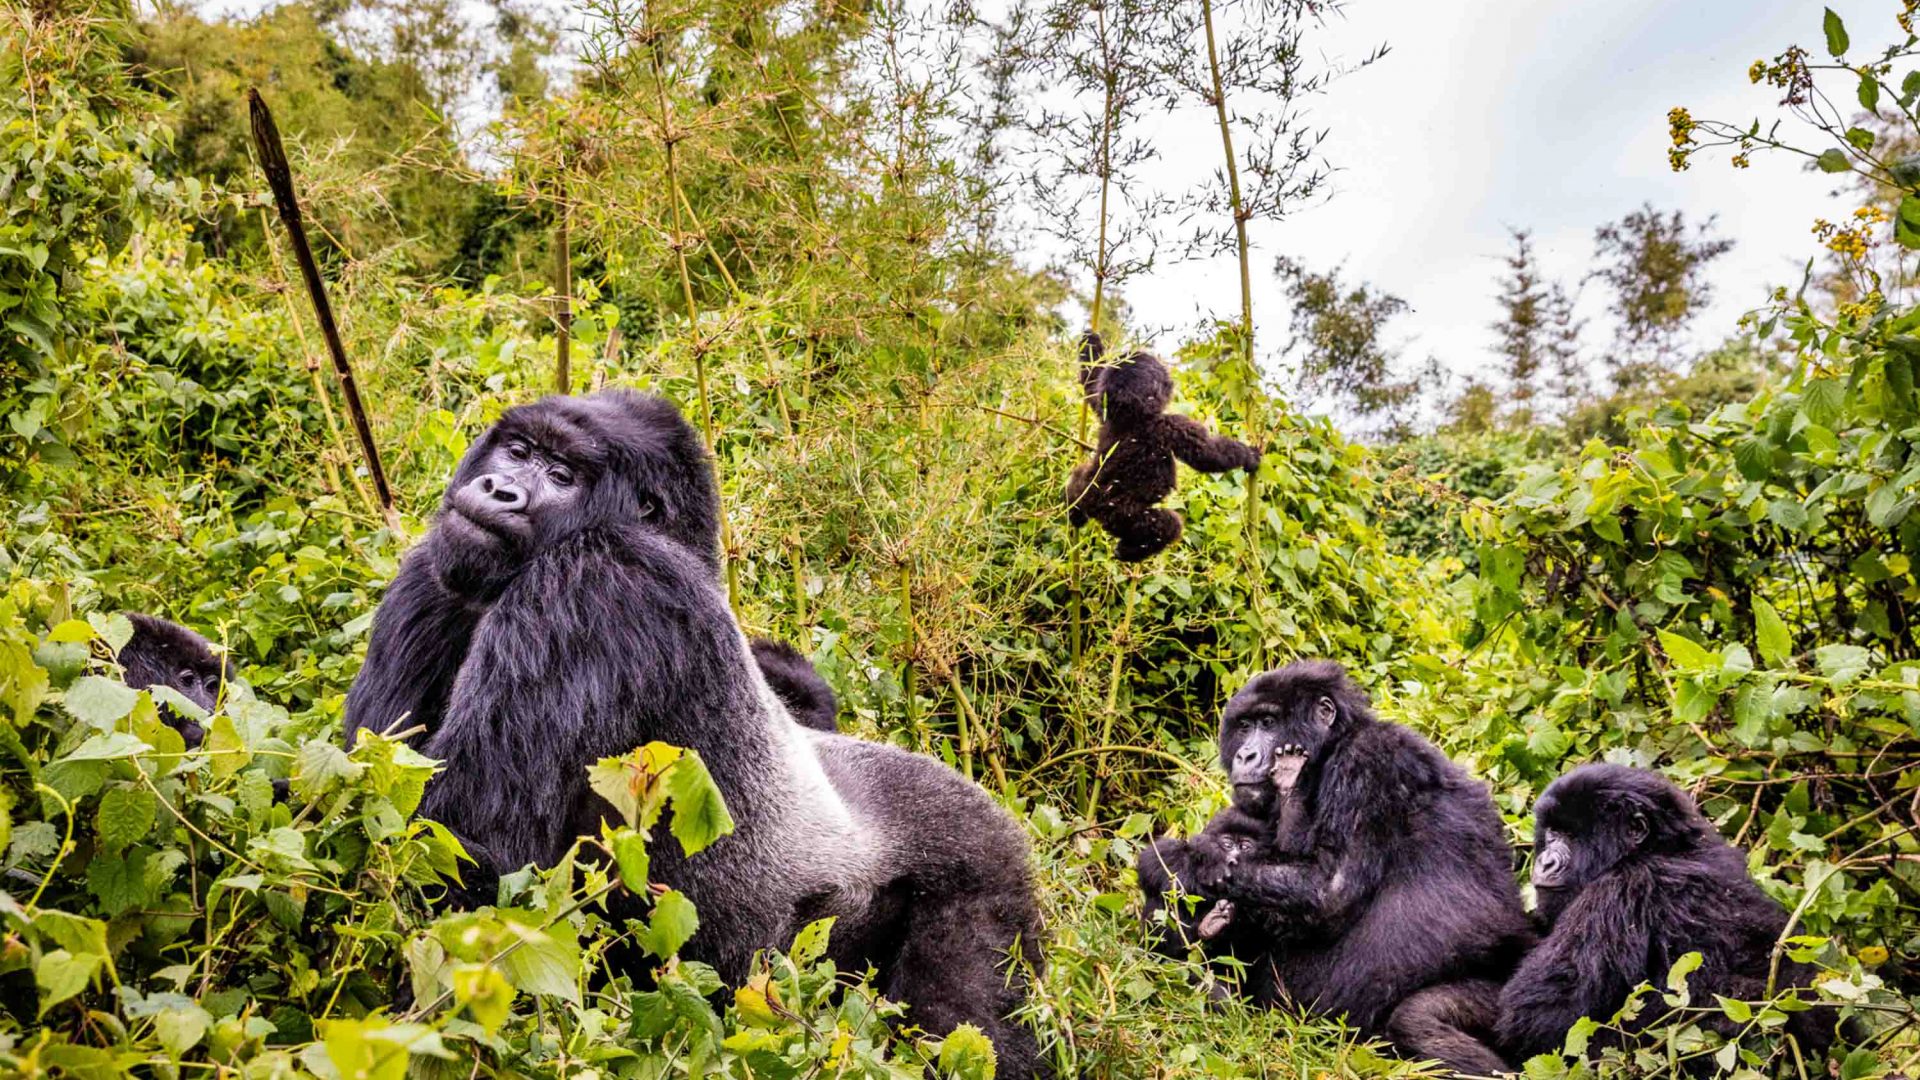 Mountain gorillas are found in Rwanda, Uganda and the Democratic Republic of Congo.